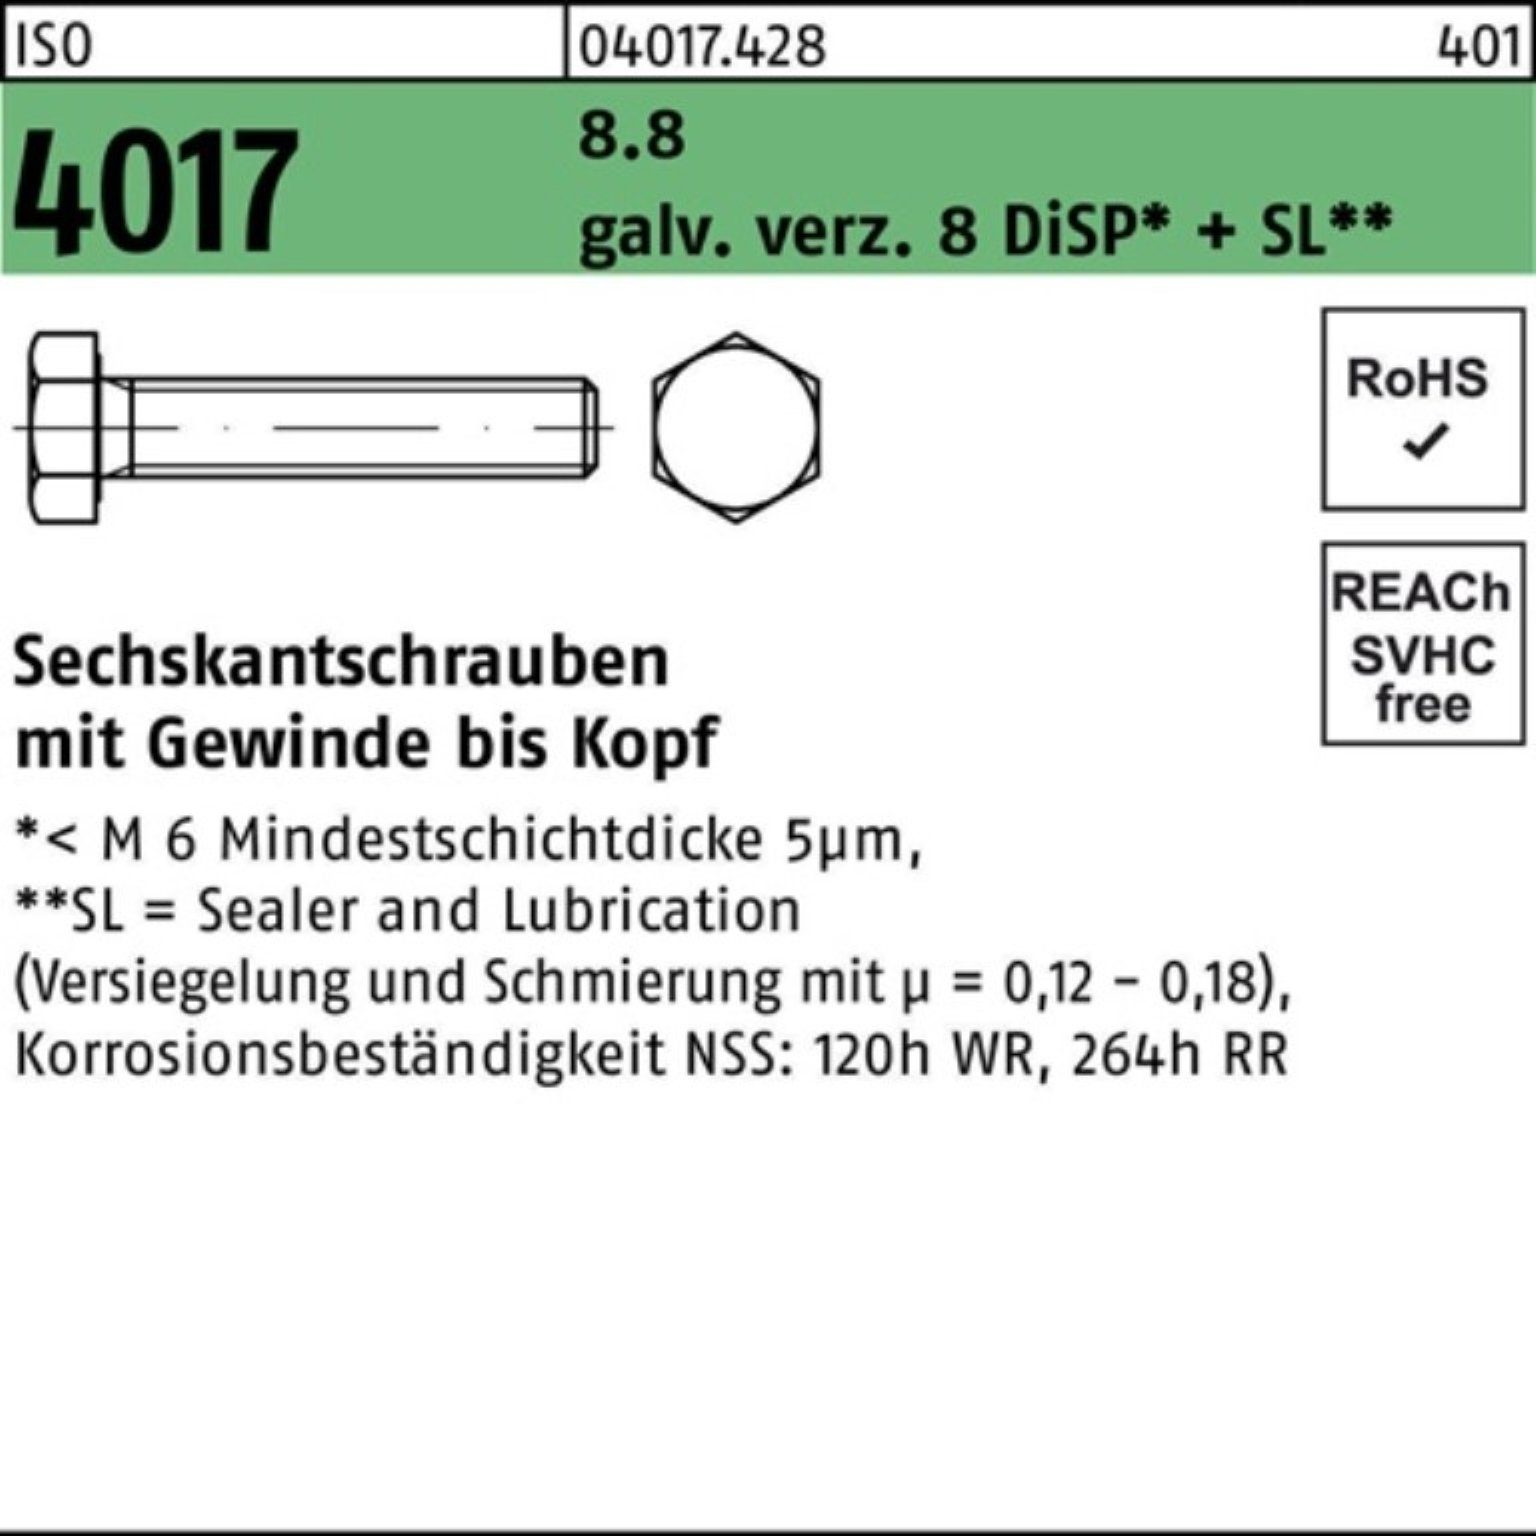 500er M4x 8.8 ISO 25 4017 Bufab Sechskantschraube VG 8 Pack Sechskantschraube DiSP+ galv.verz.